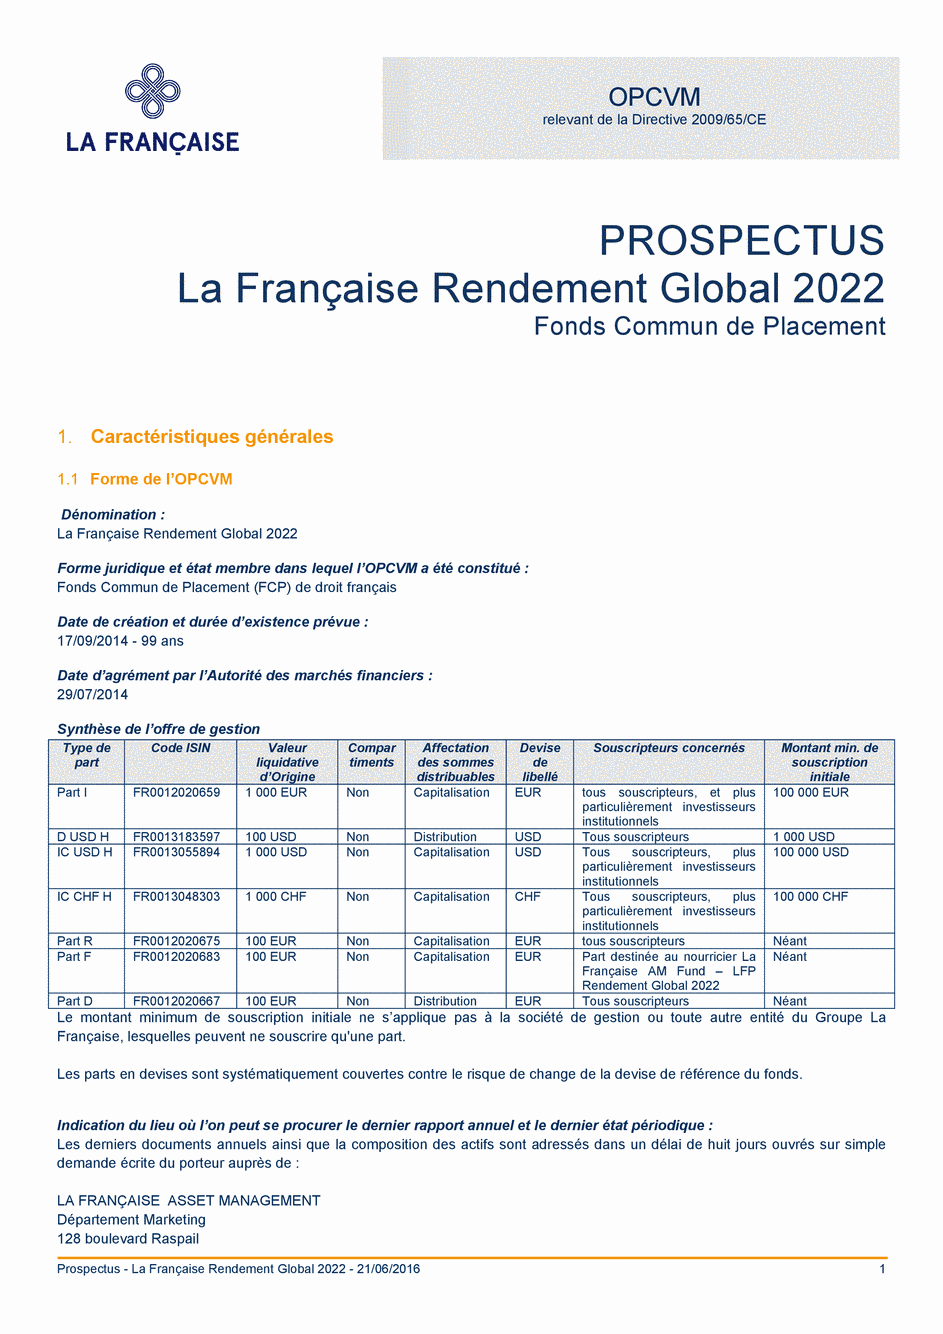 Prospectus La Française Rendement Global 2022 - Part I - 21/06/2016 - Français